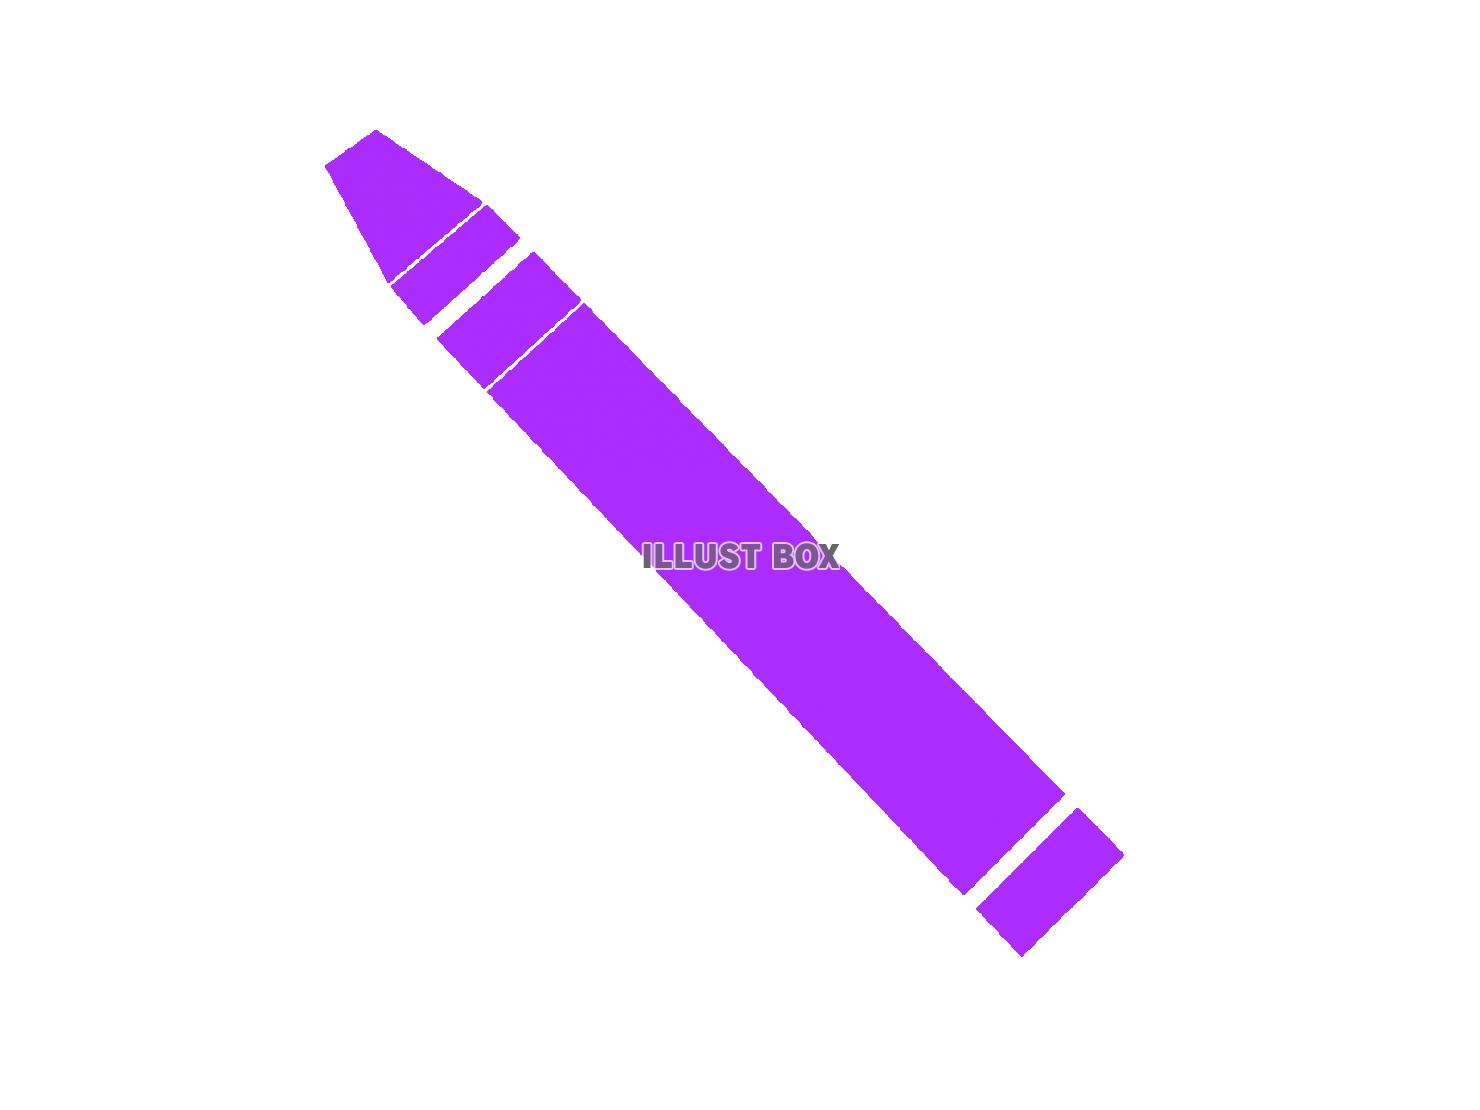 紫色のクレヨンのシルエットアイコン